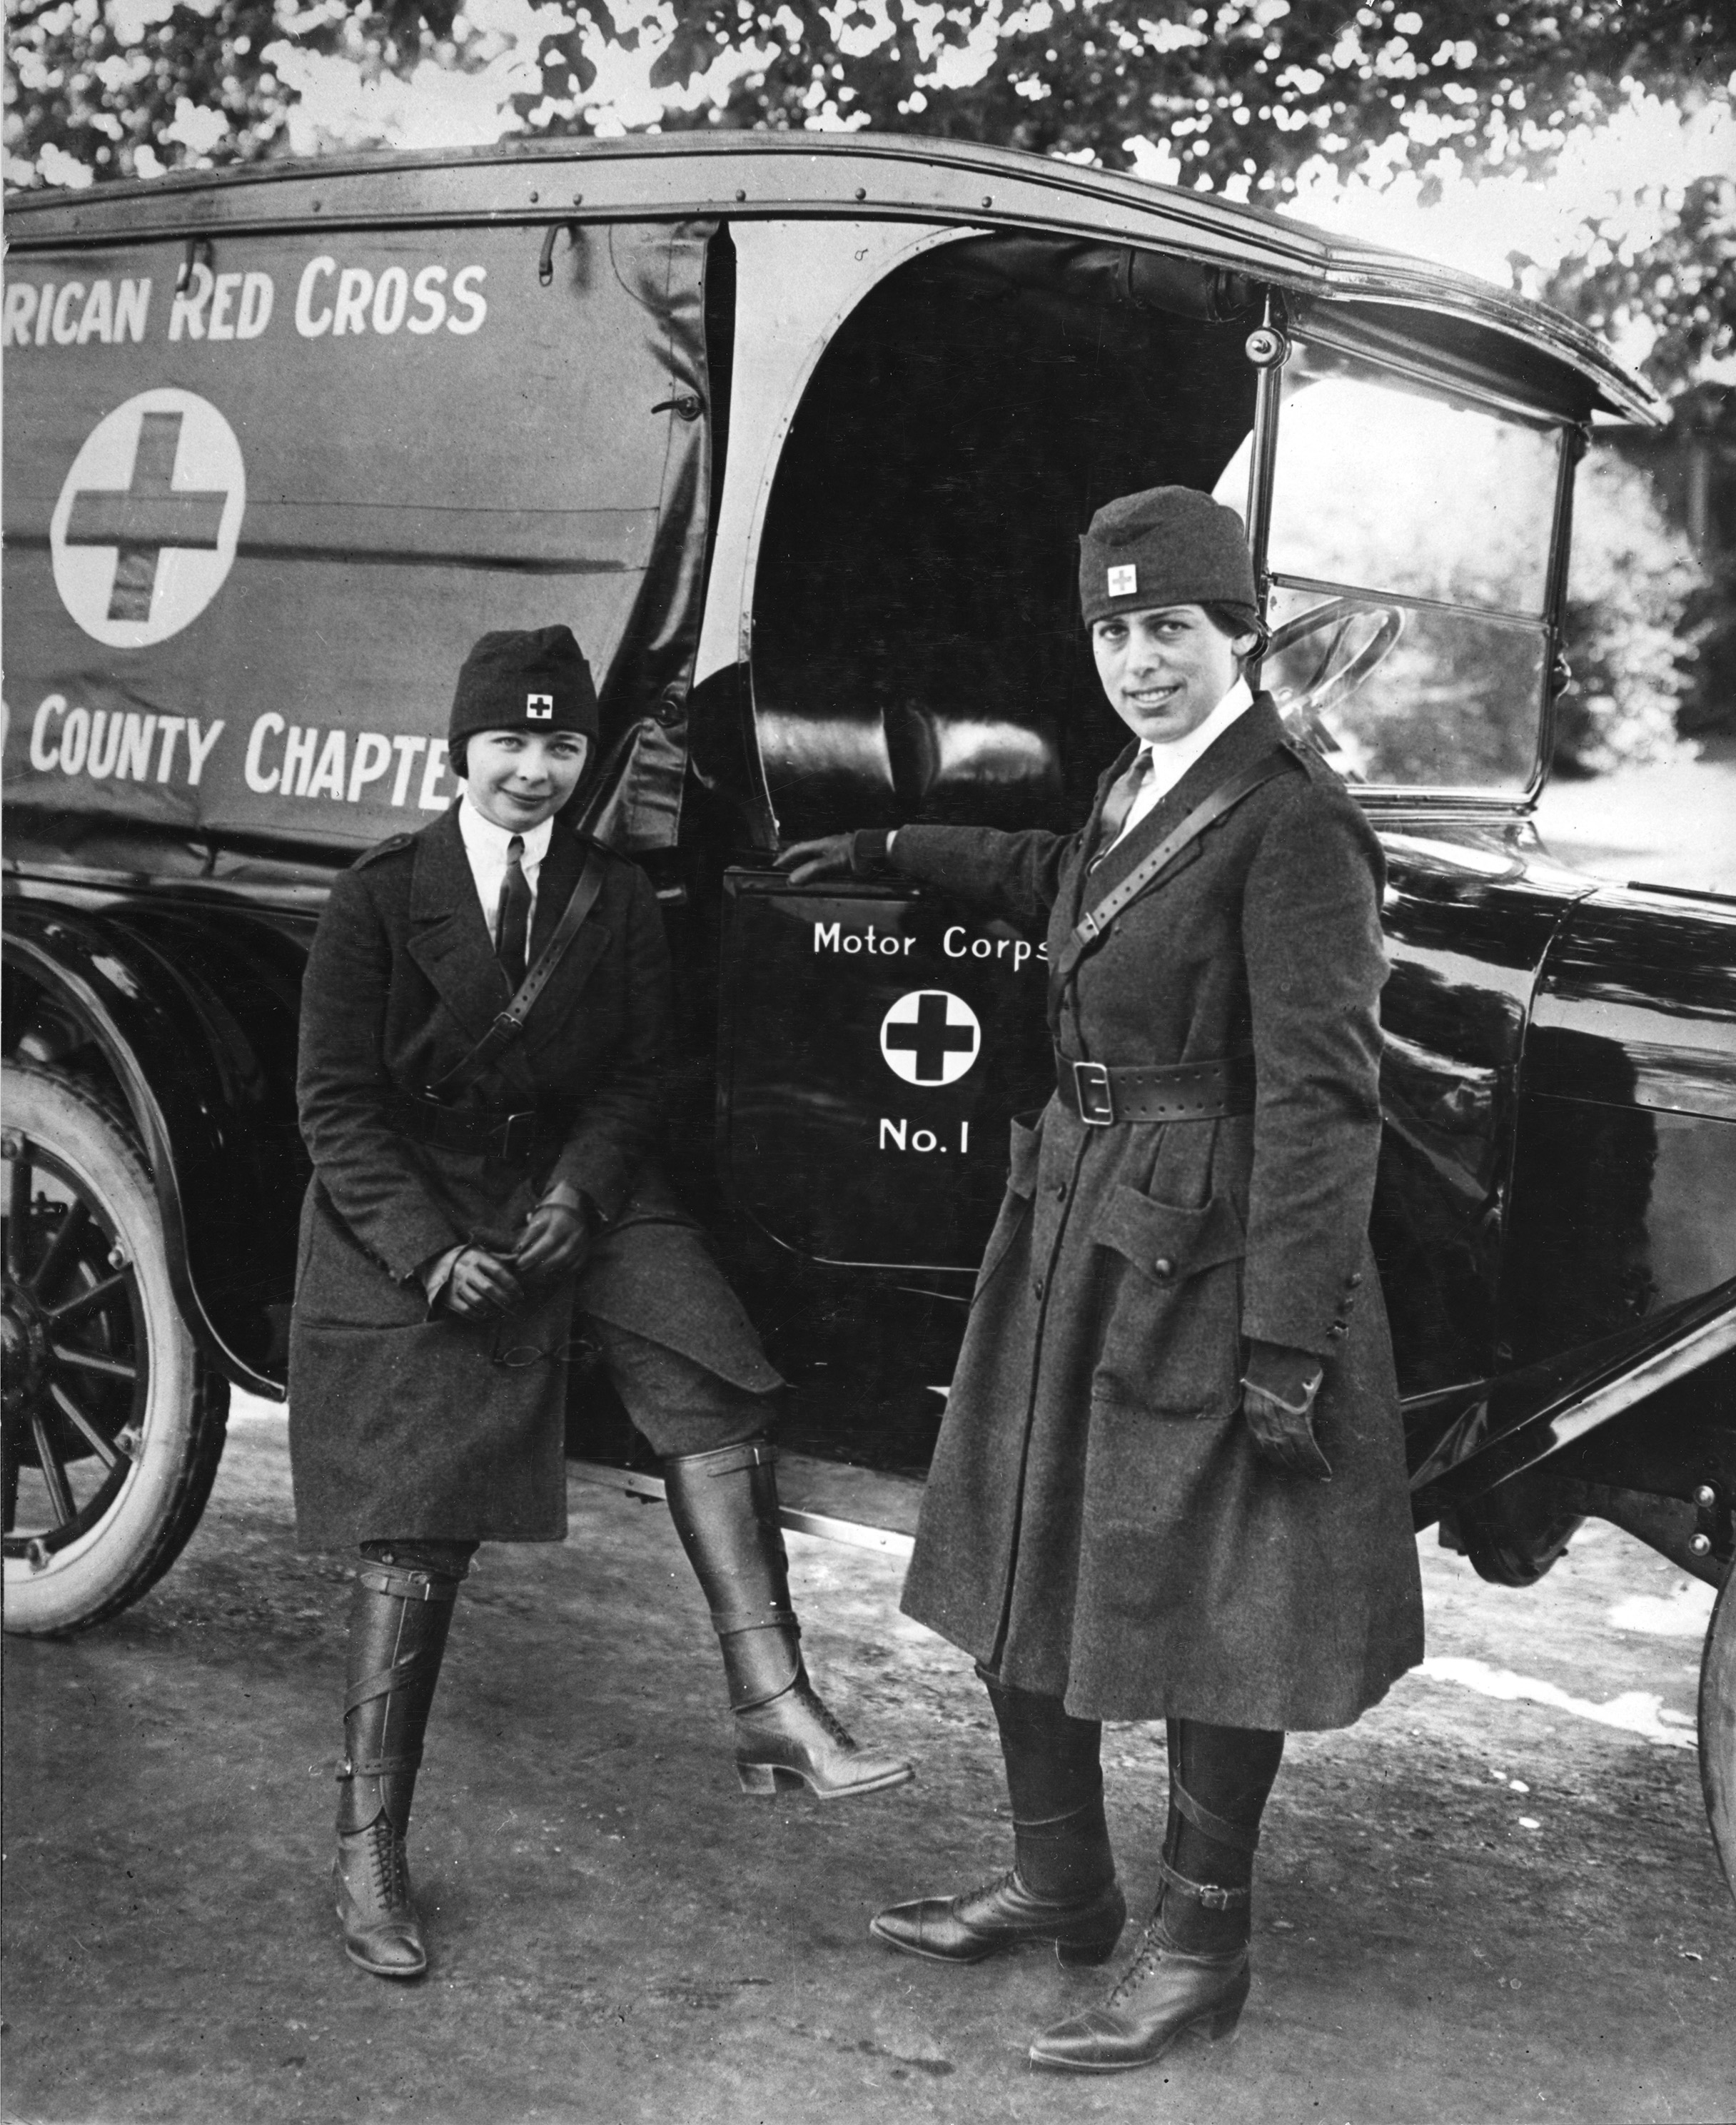 Red Cross Girls [1958]